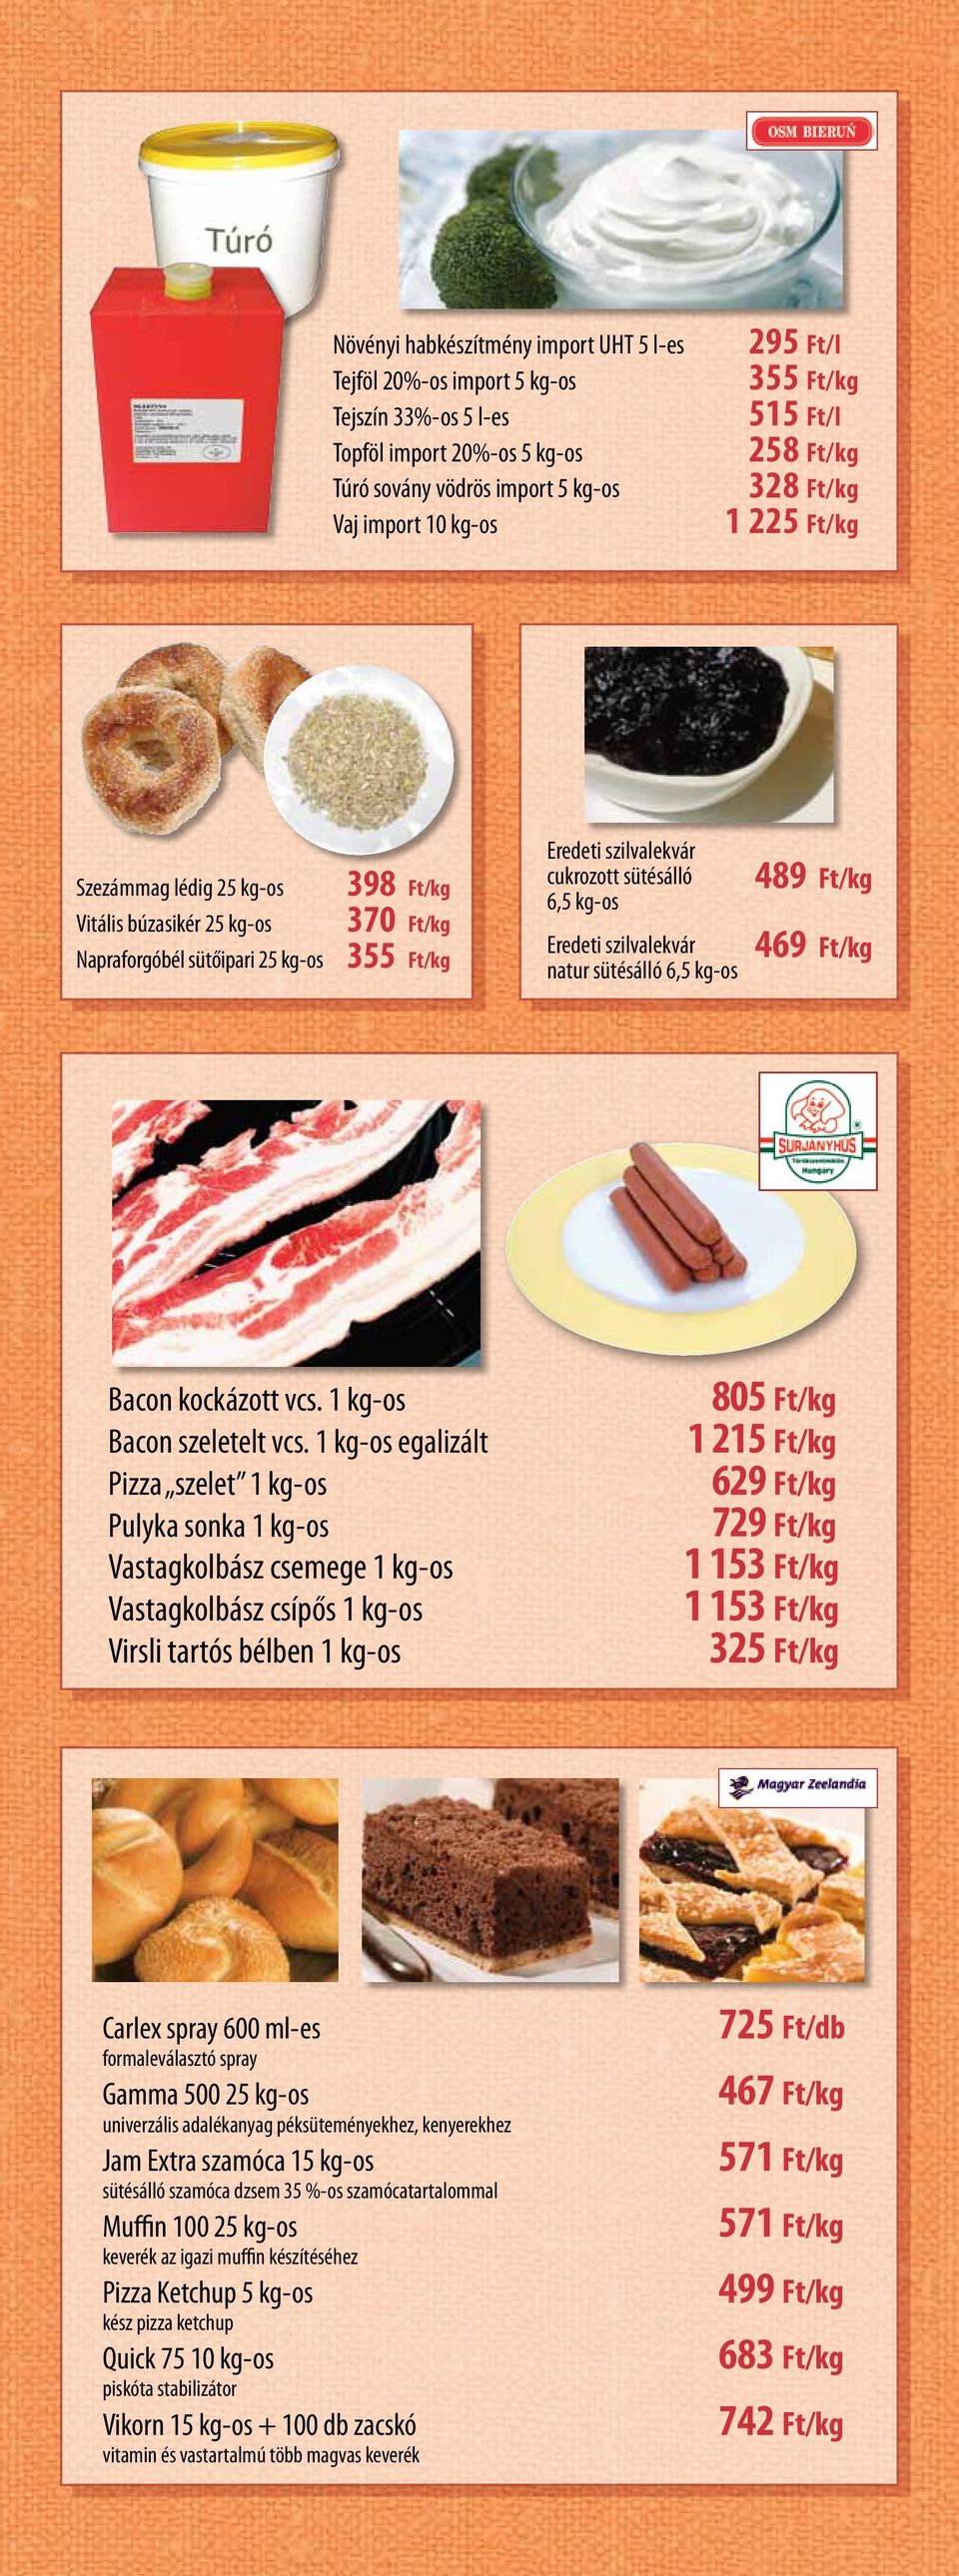 kg-os Eredeti szilvalekvár natur sütésálló 6,5 kg-os 489 Ft/kg 469 Ft/kg Bacon kockázott vcs. 1 kg-os 805 Ft/kg Bacon szeletelt vcs.